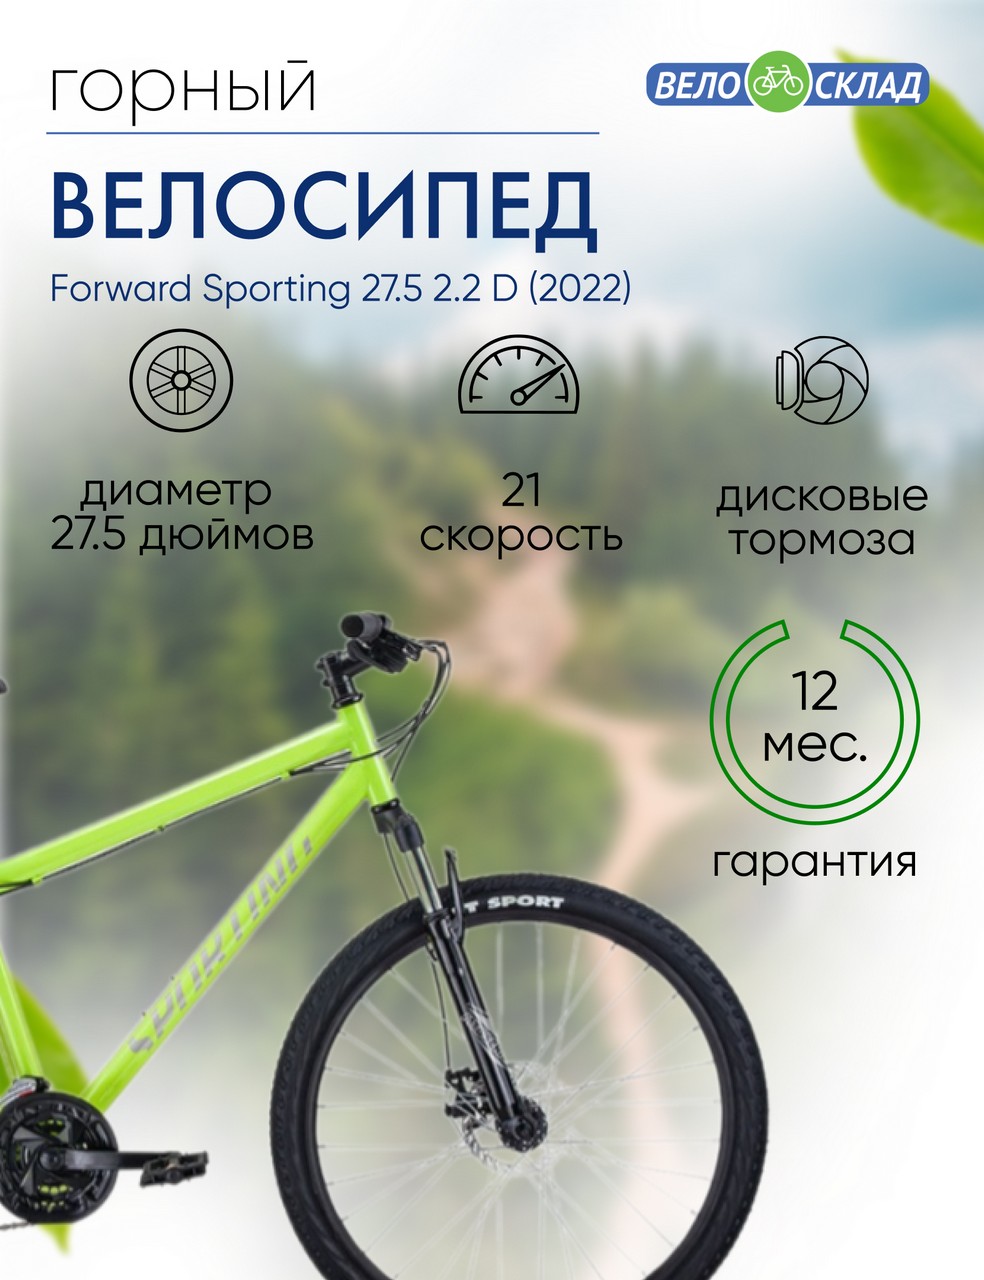 

Горный велосипед Forward Sporting 27.5 2.2 D, год 2022, цвет Зеленый-Серебристый, ростовка, Sporting 27.5 2.2 D, год 2022, цвет Зеленый-Серебристый, ростовка 17